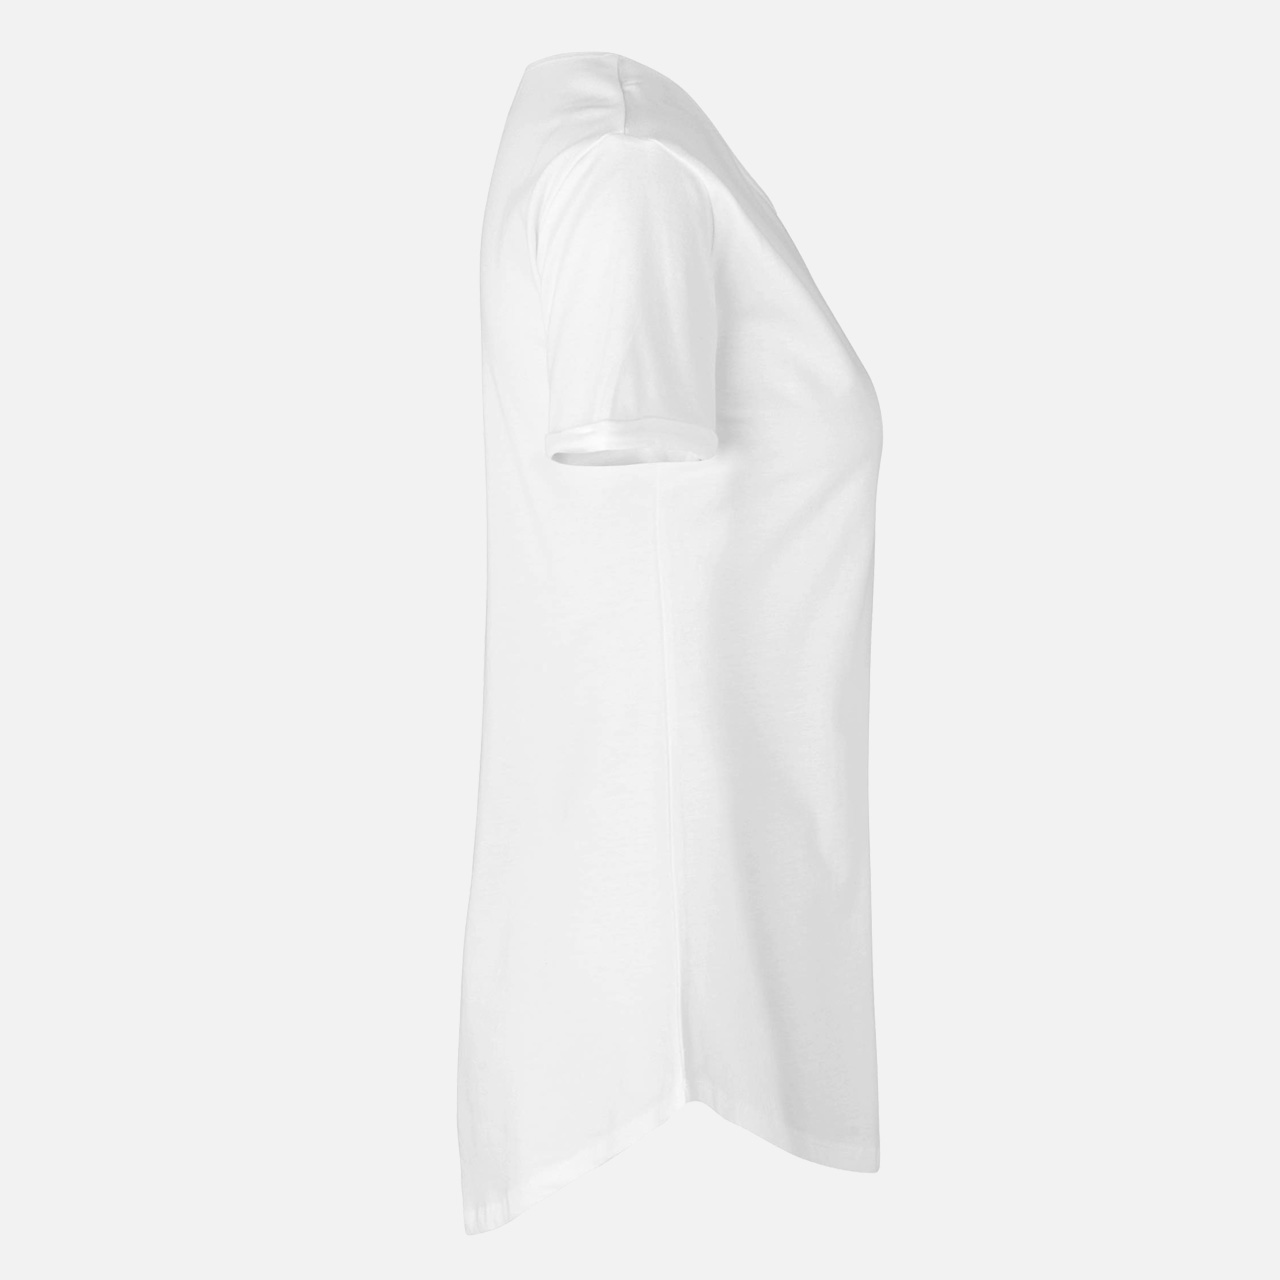 Doppelpack Ladies Roll Up Sleeve T-Shirt - Bio-Baumwolle weiss Weiß L